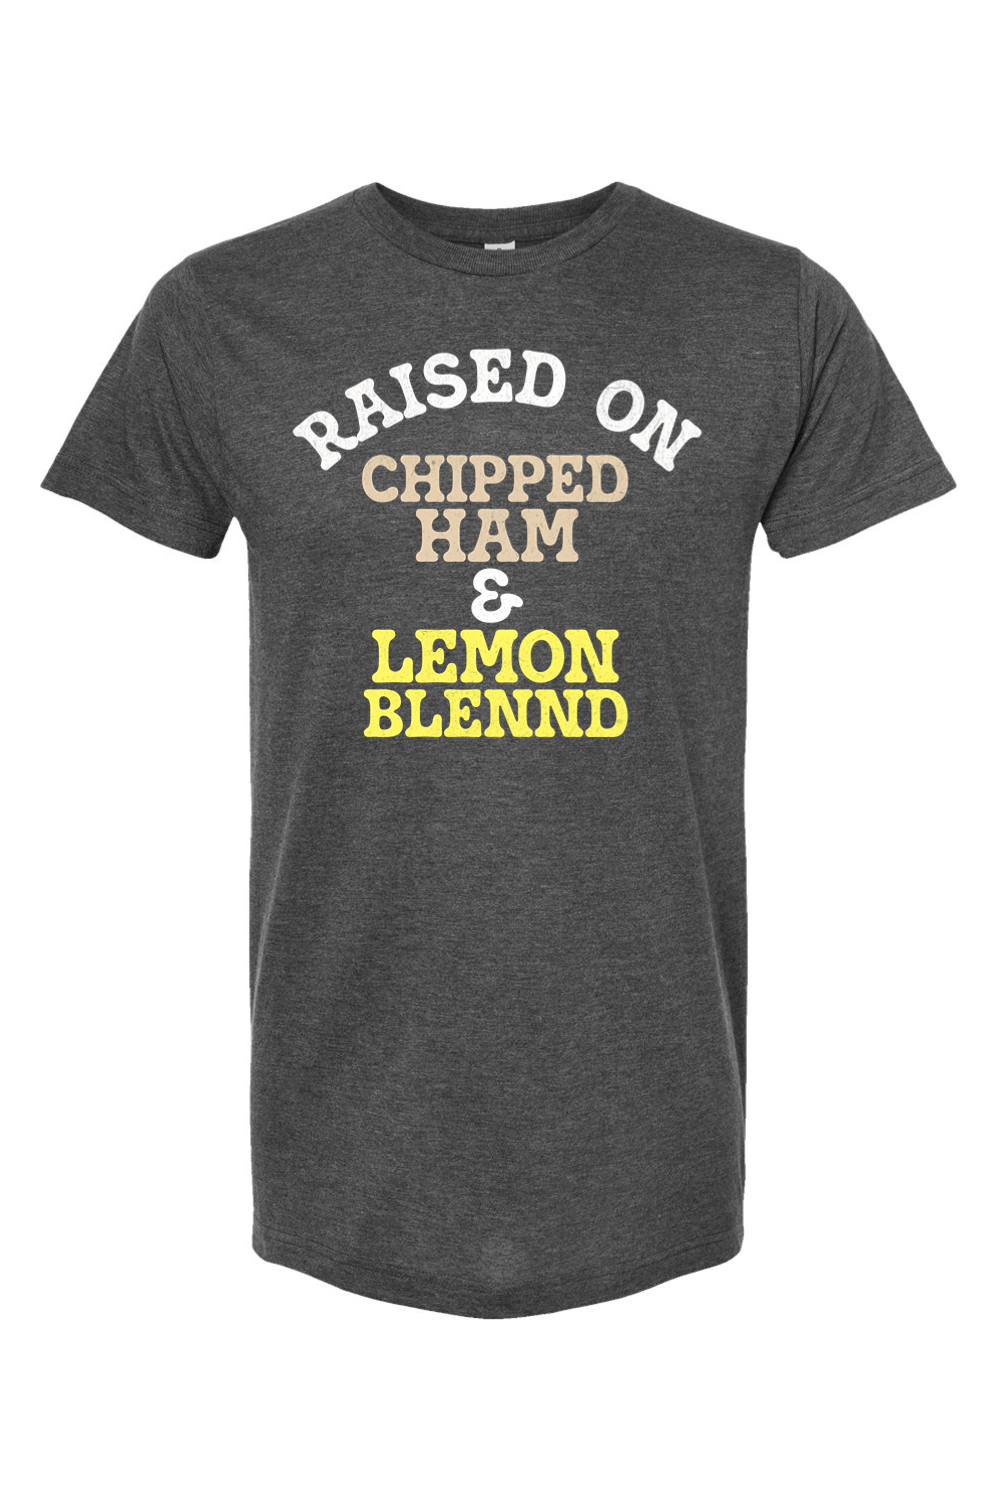 Raised on Chipped Ham & Lemon Blennd